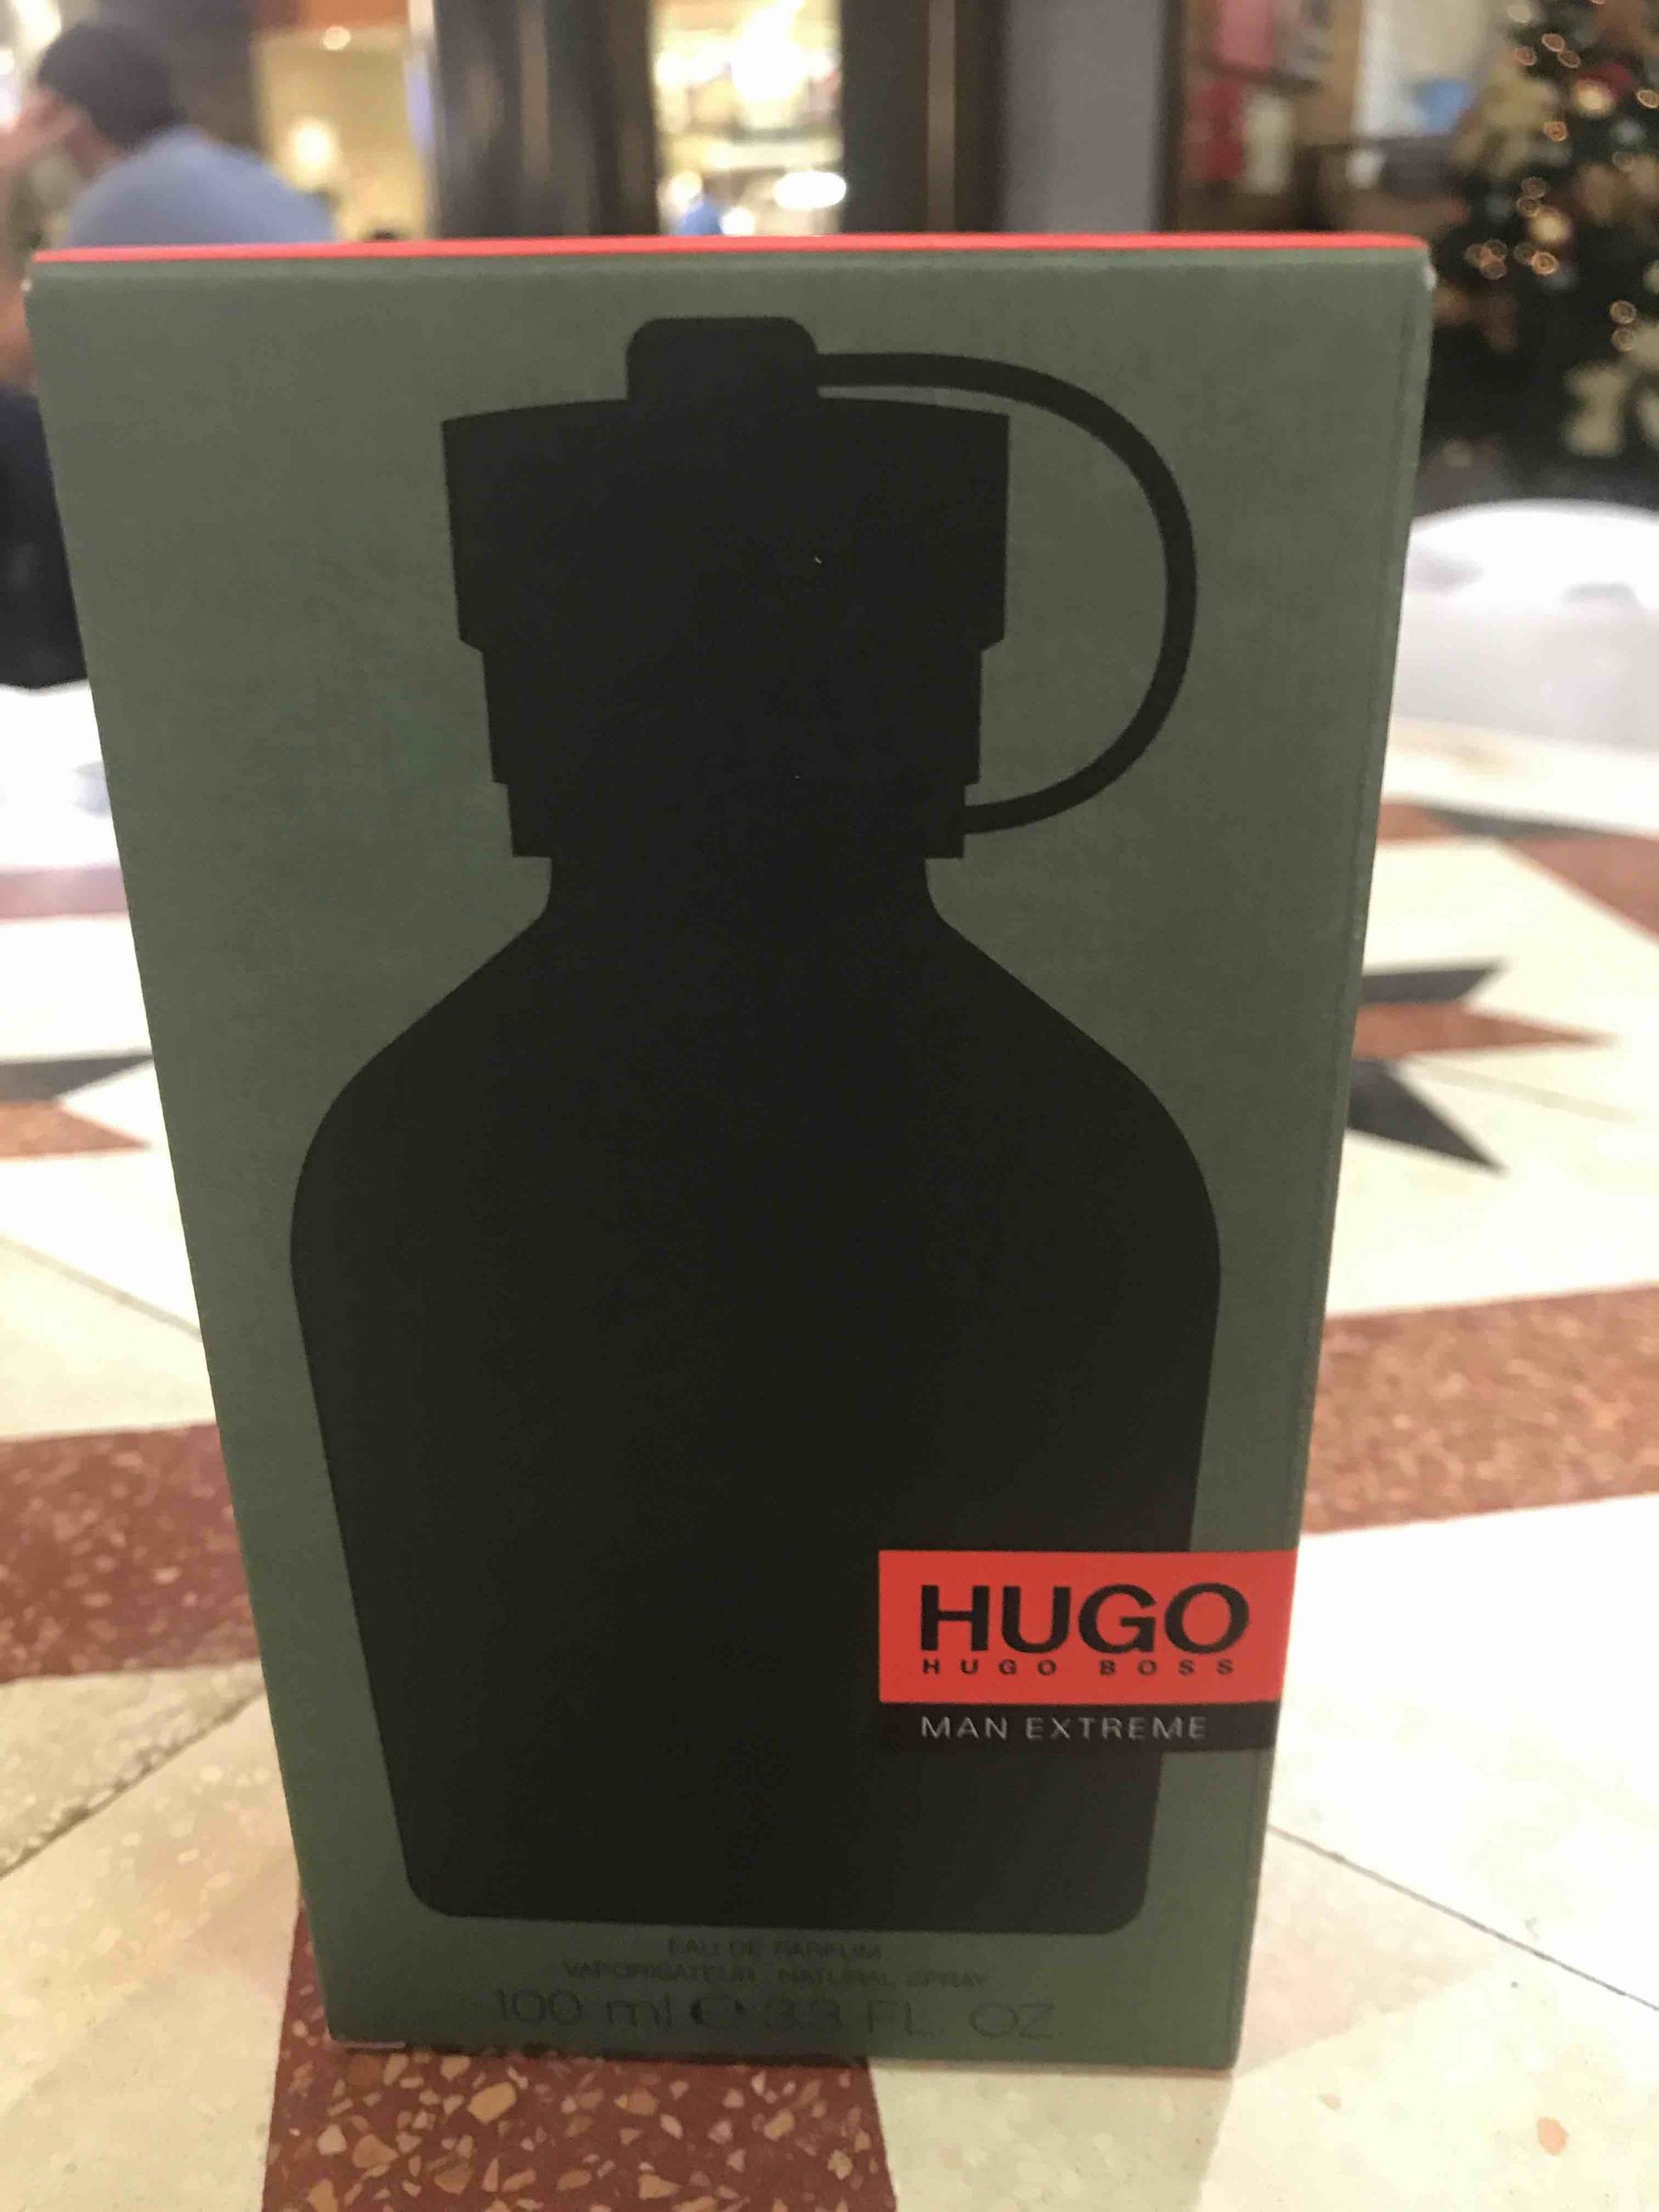 HUGO BOSS - Man extrême - Eau de parfum